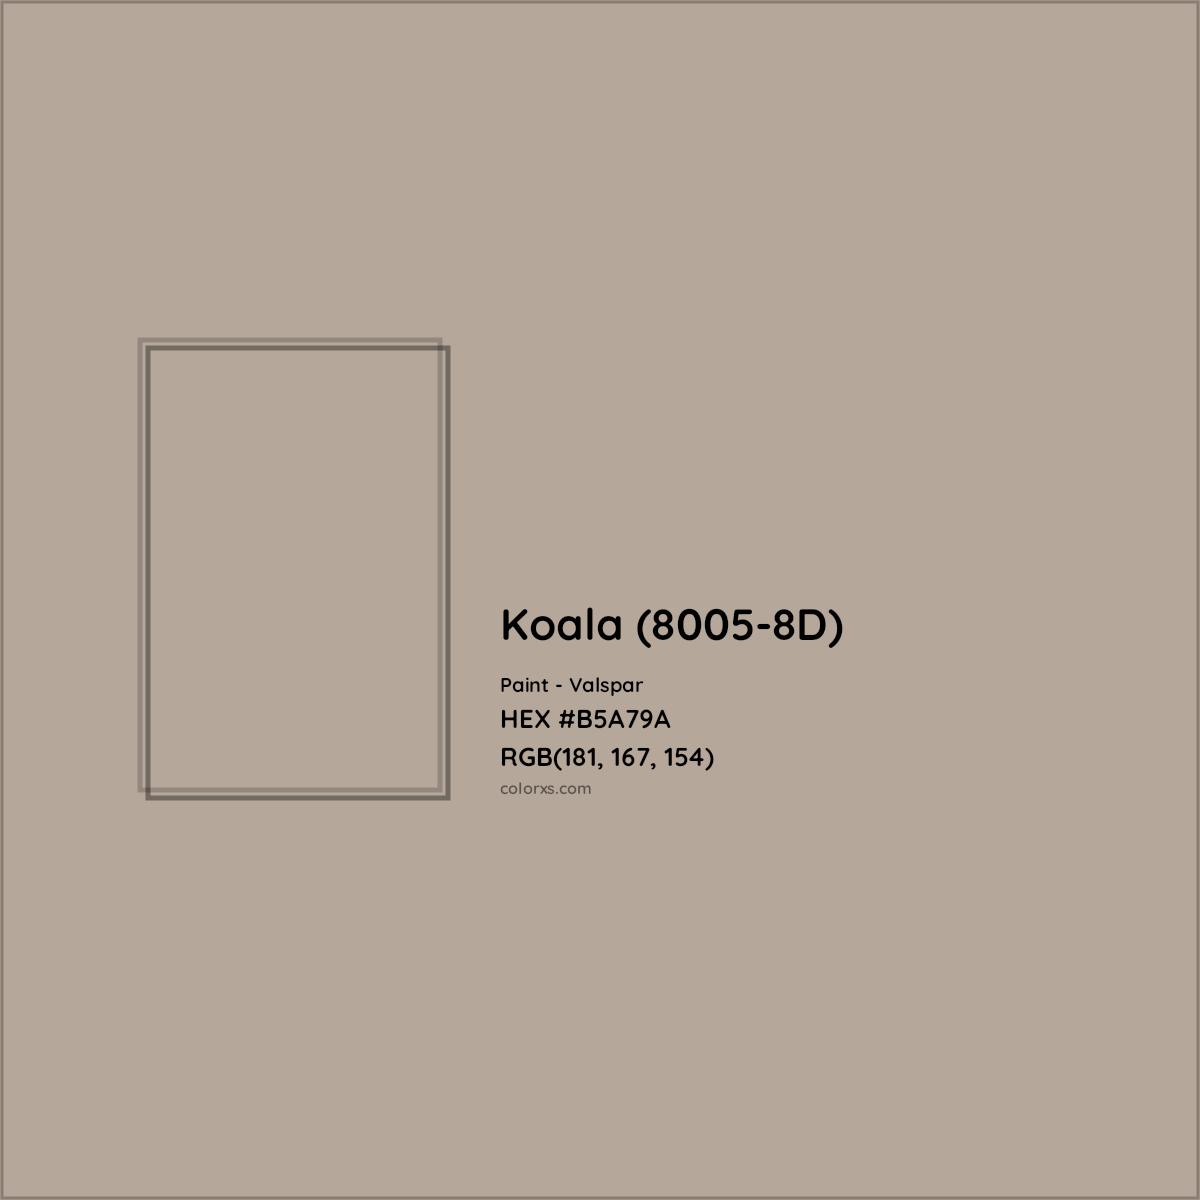 HEX #B5A79A Koala (8005-8D) Paint Valspar - Color Code